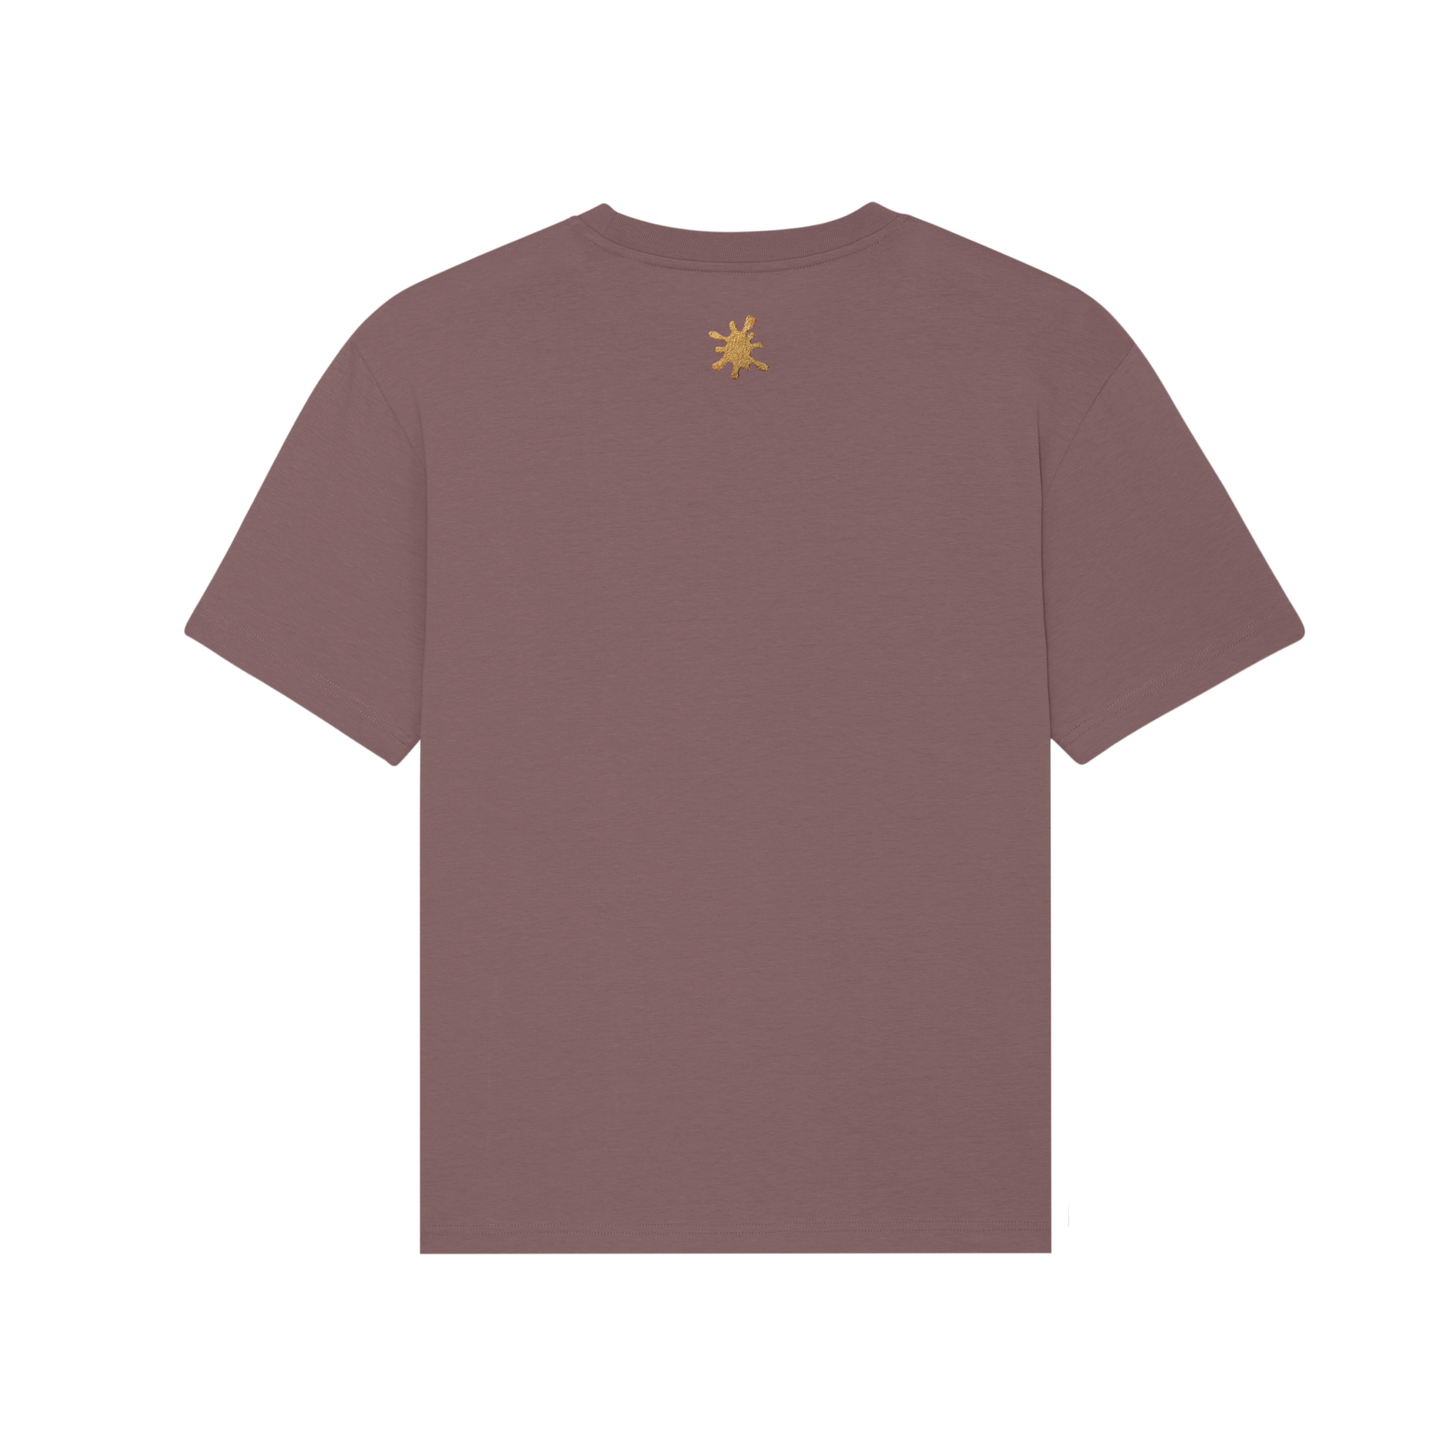 Custard Shop Official Scrabble Style T-Shirt | Brown Custard Shop Official